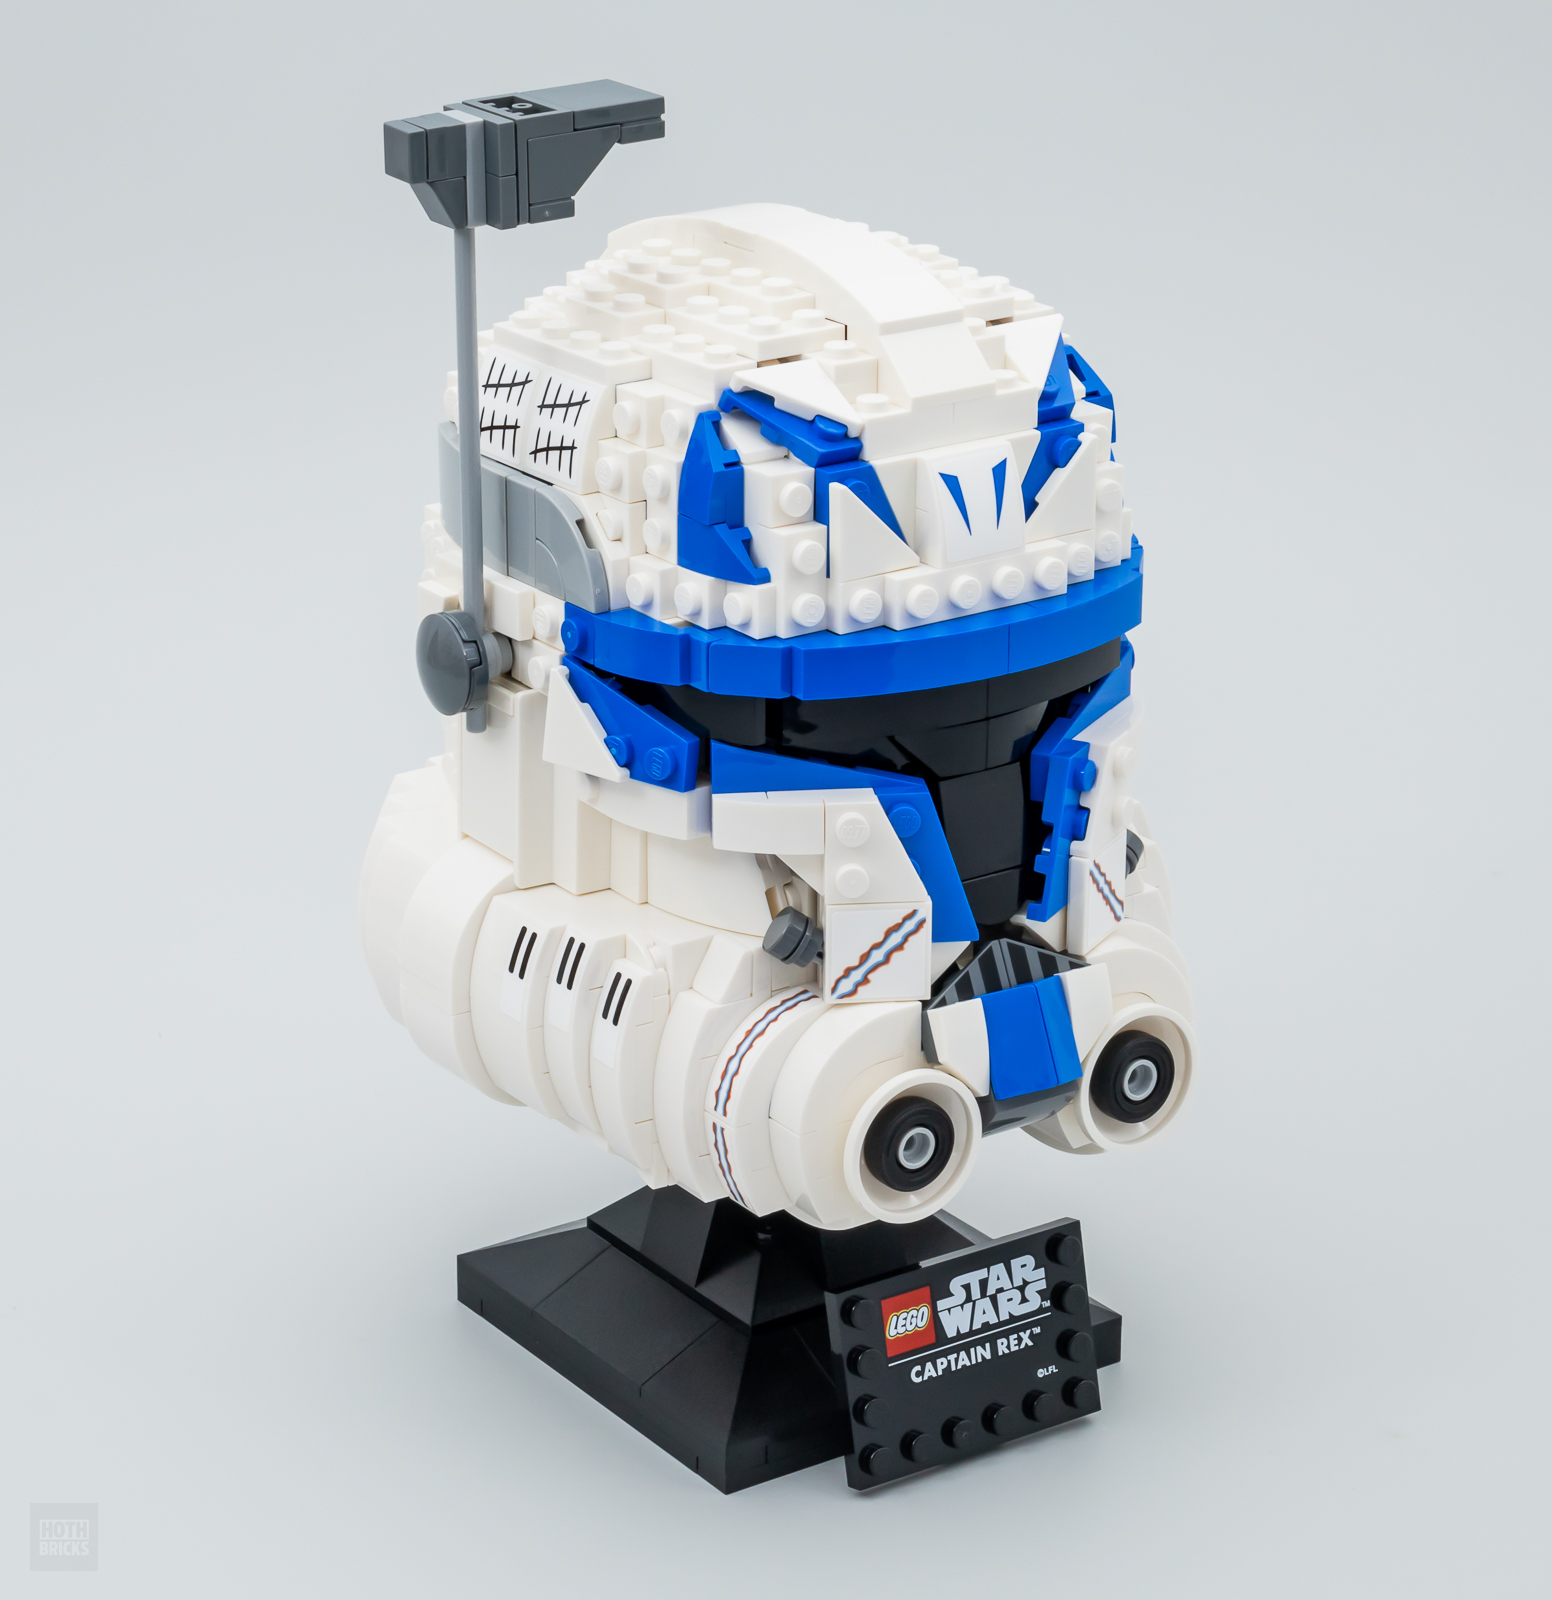 Շատ արագ փորձարկվել է՝ LEGO Star Wars 75349 Captain Rex սաղավարտ